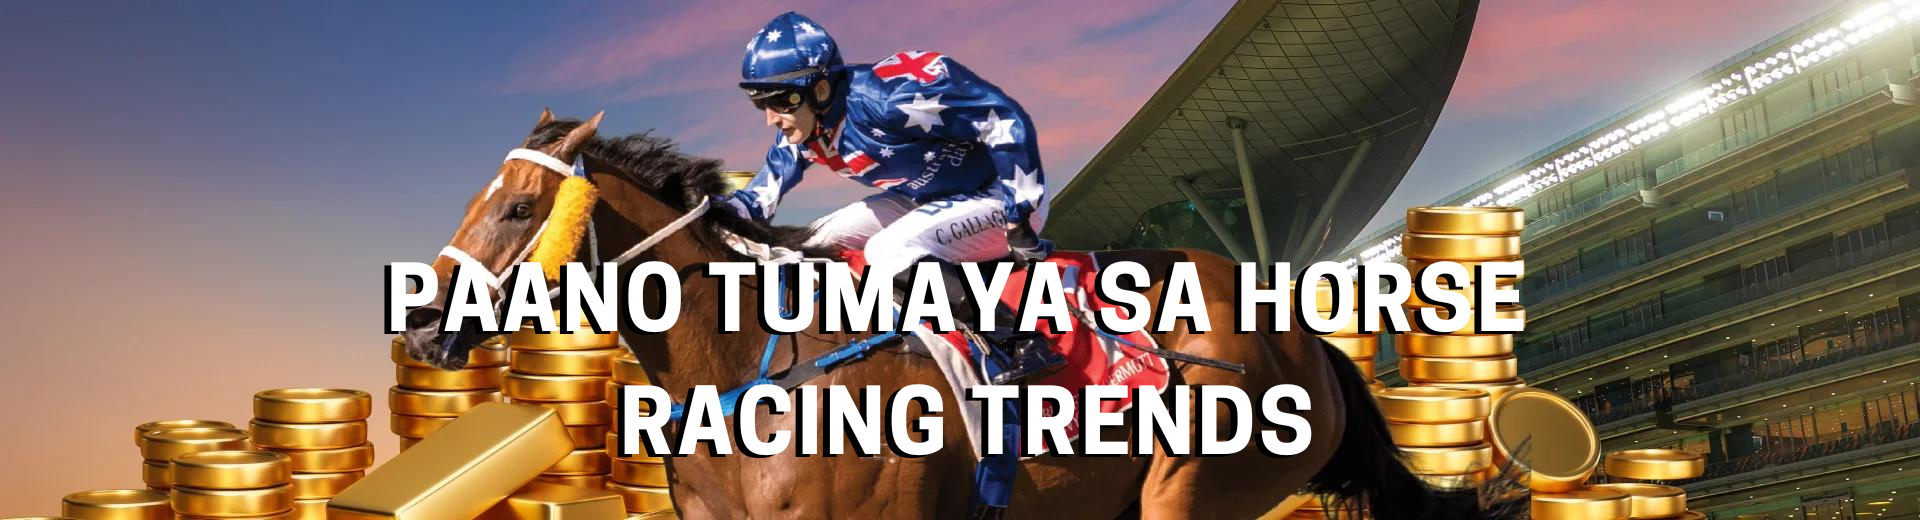 Paano Tumaya sa Horse Racing Trends